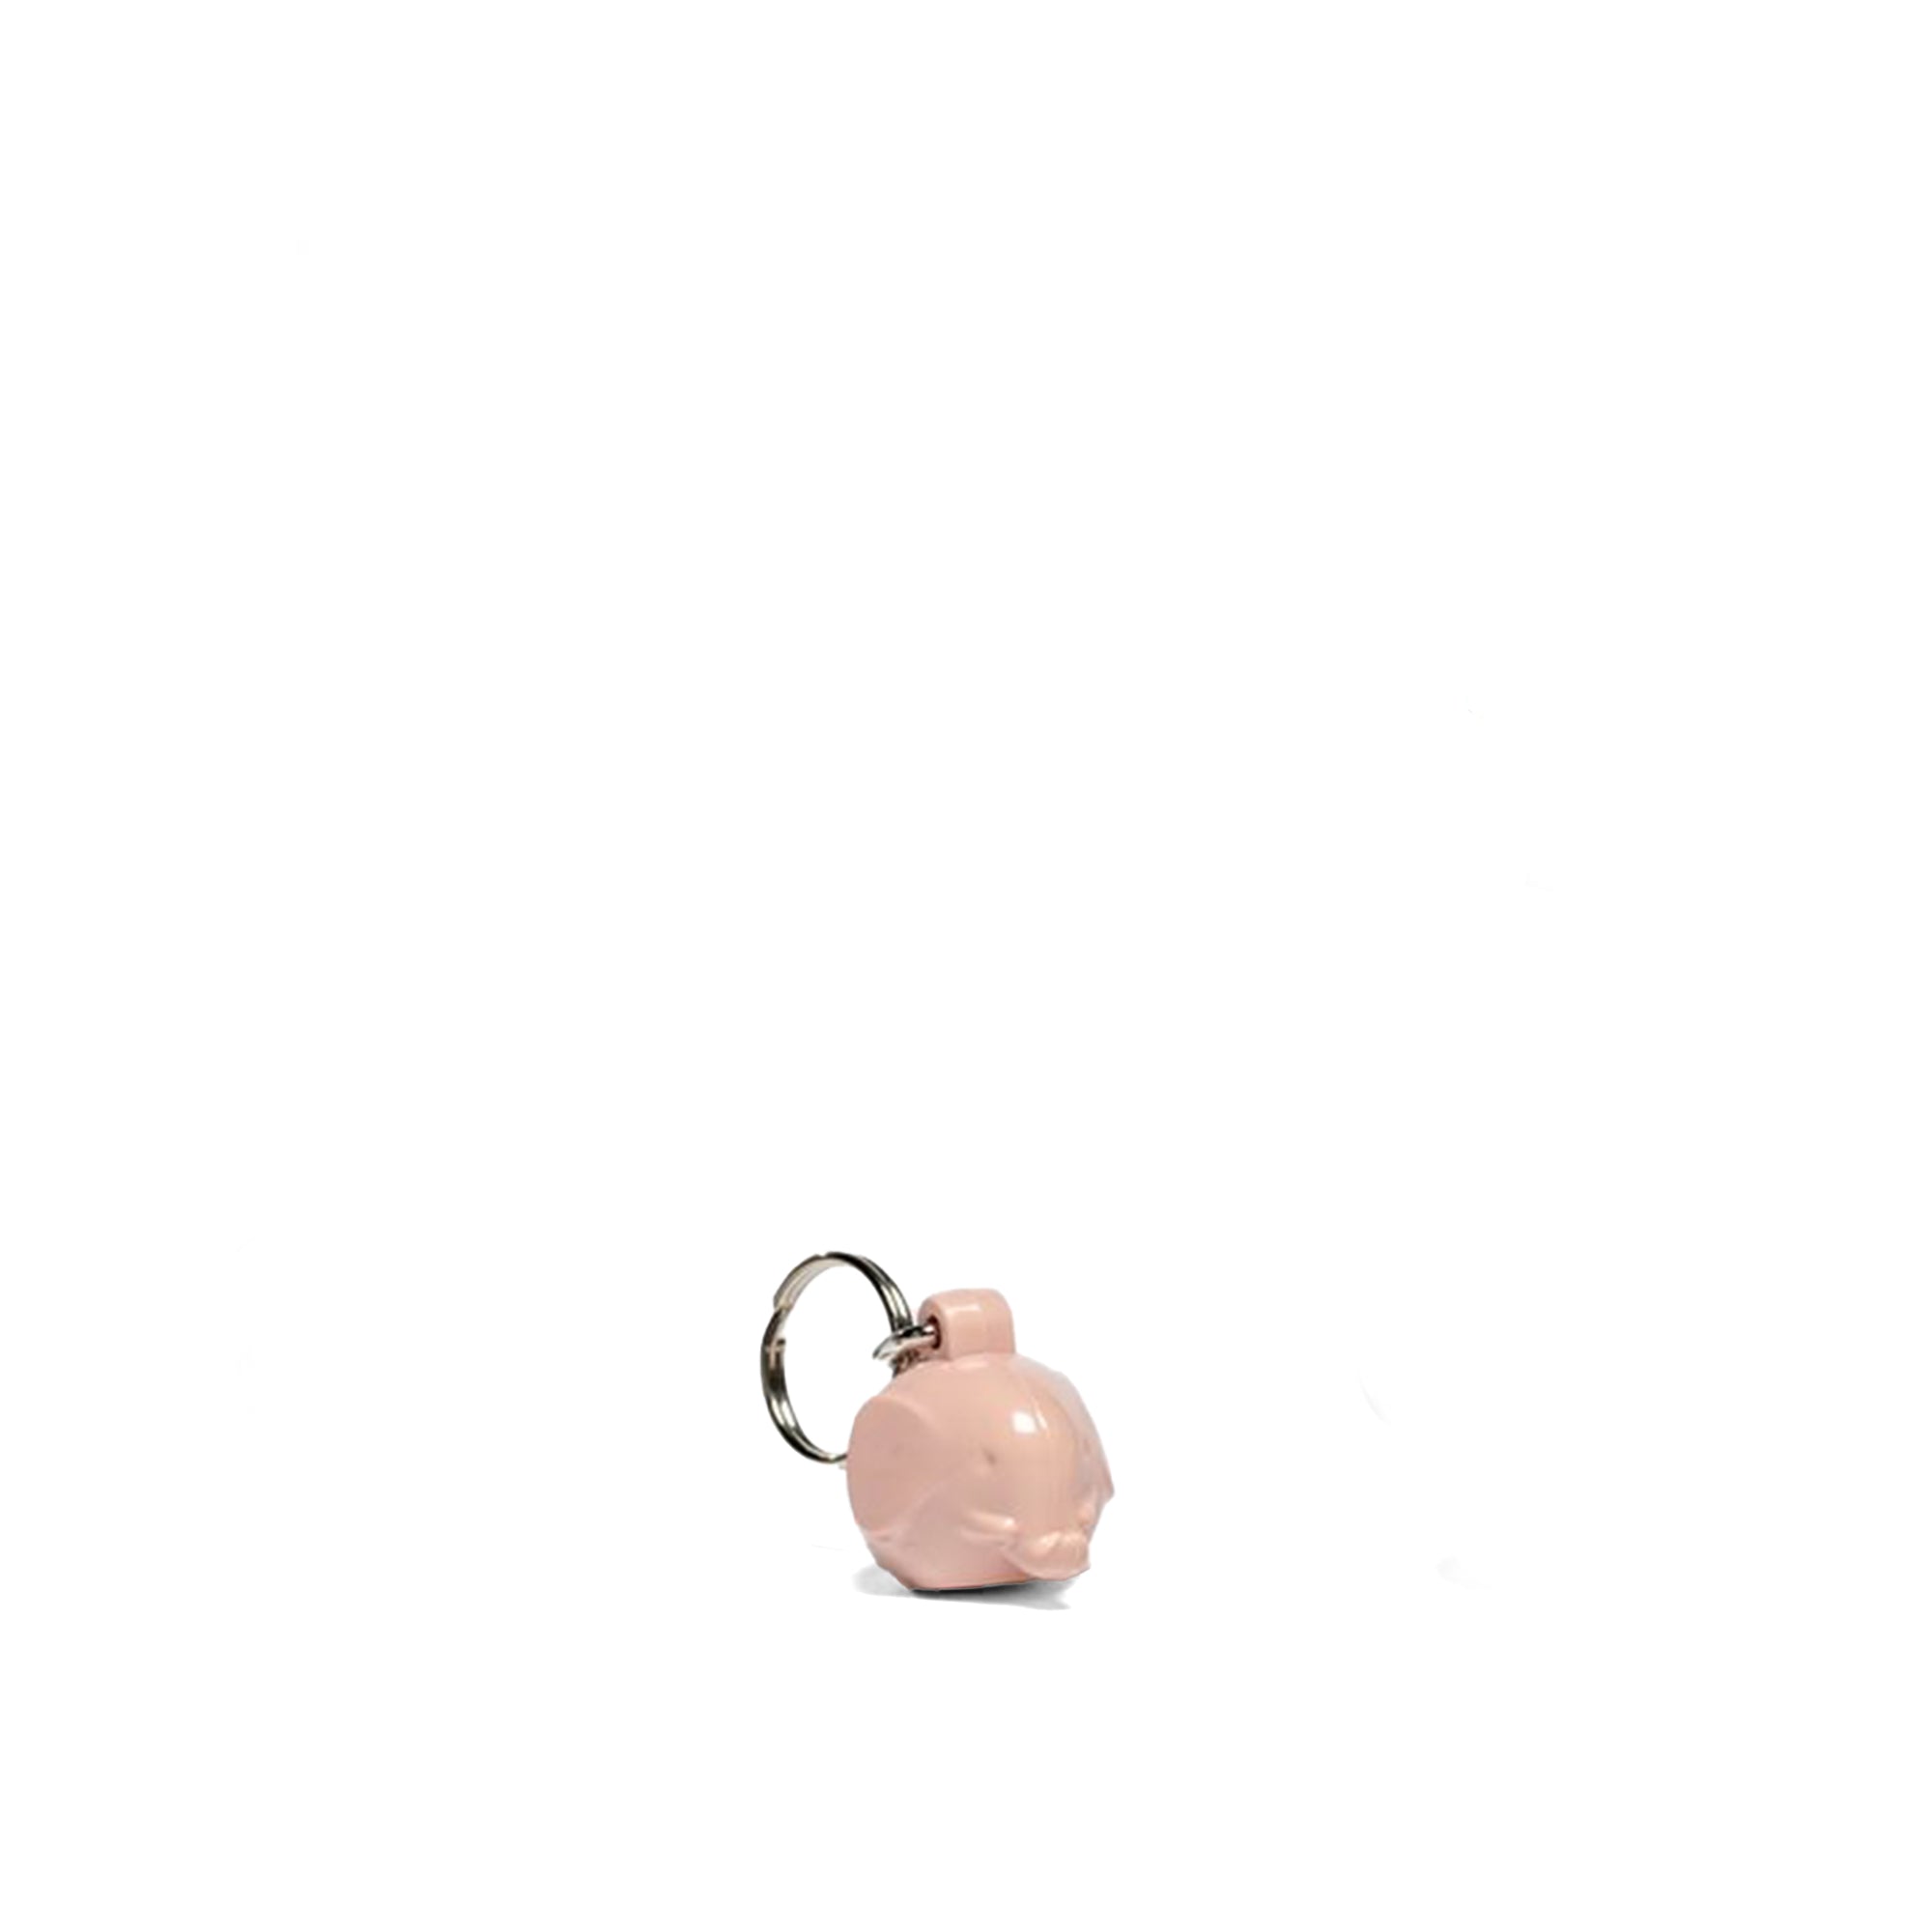 Mini Elephant Keychain